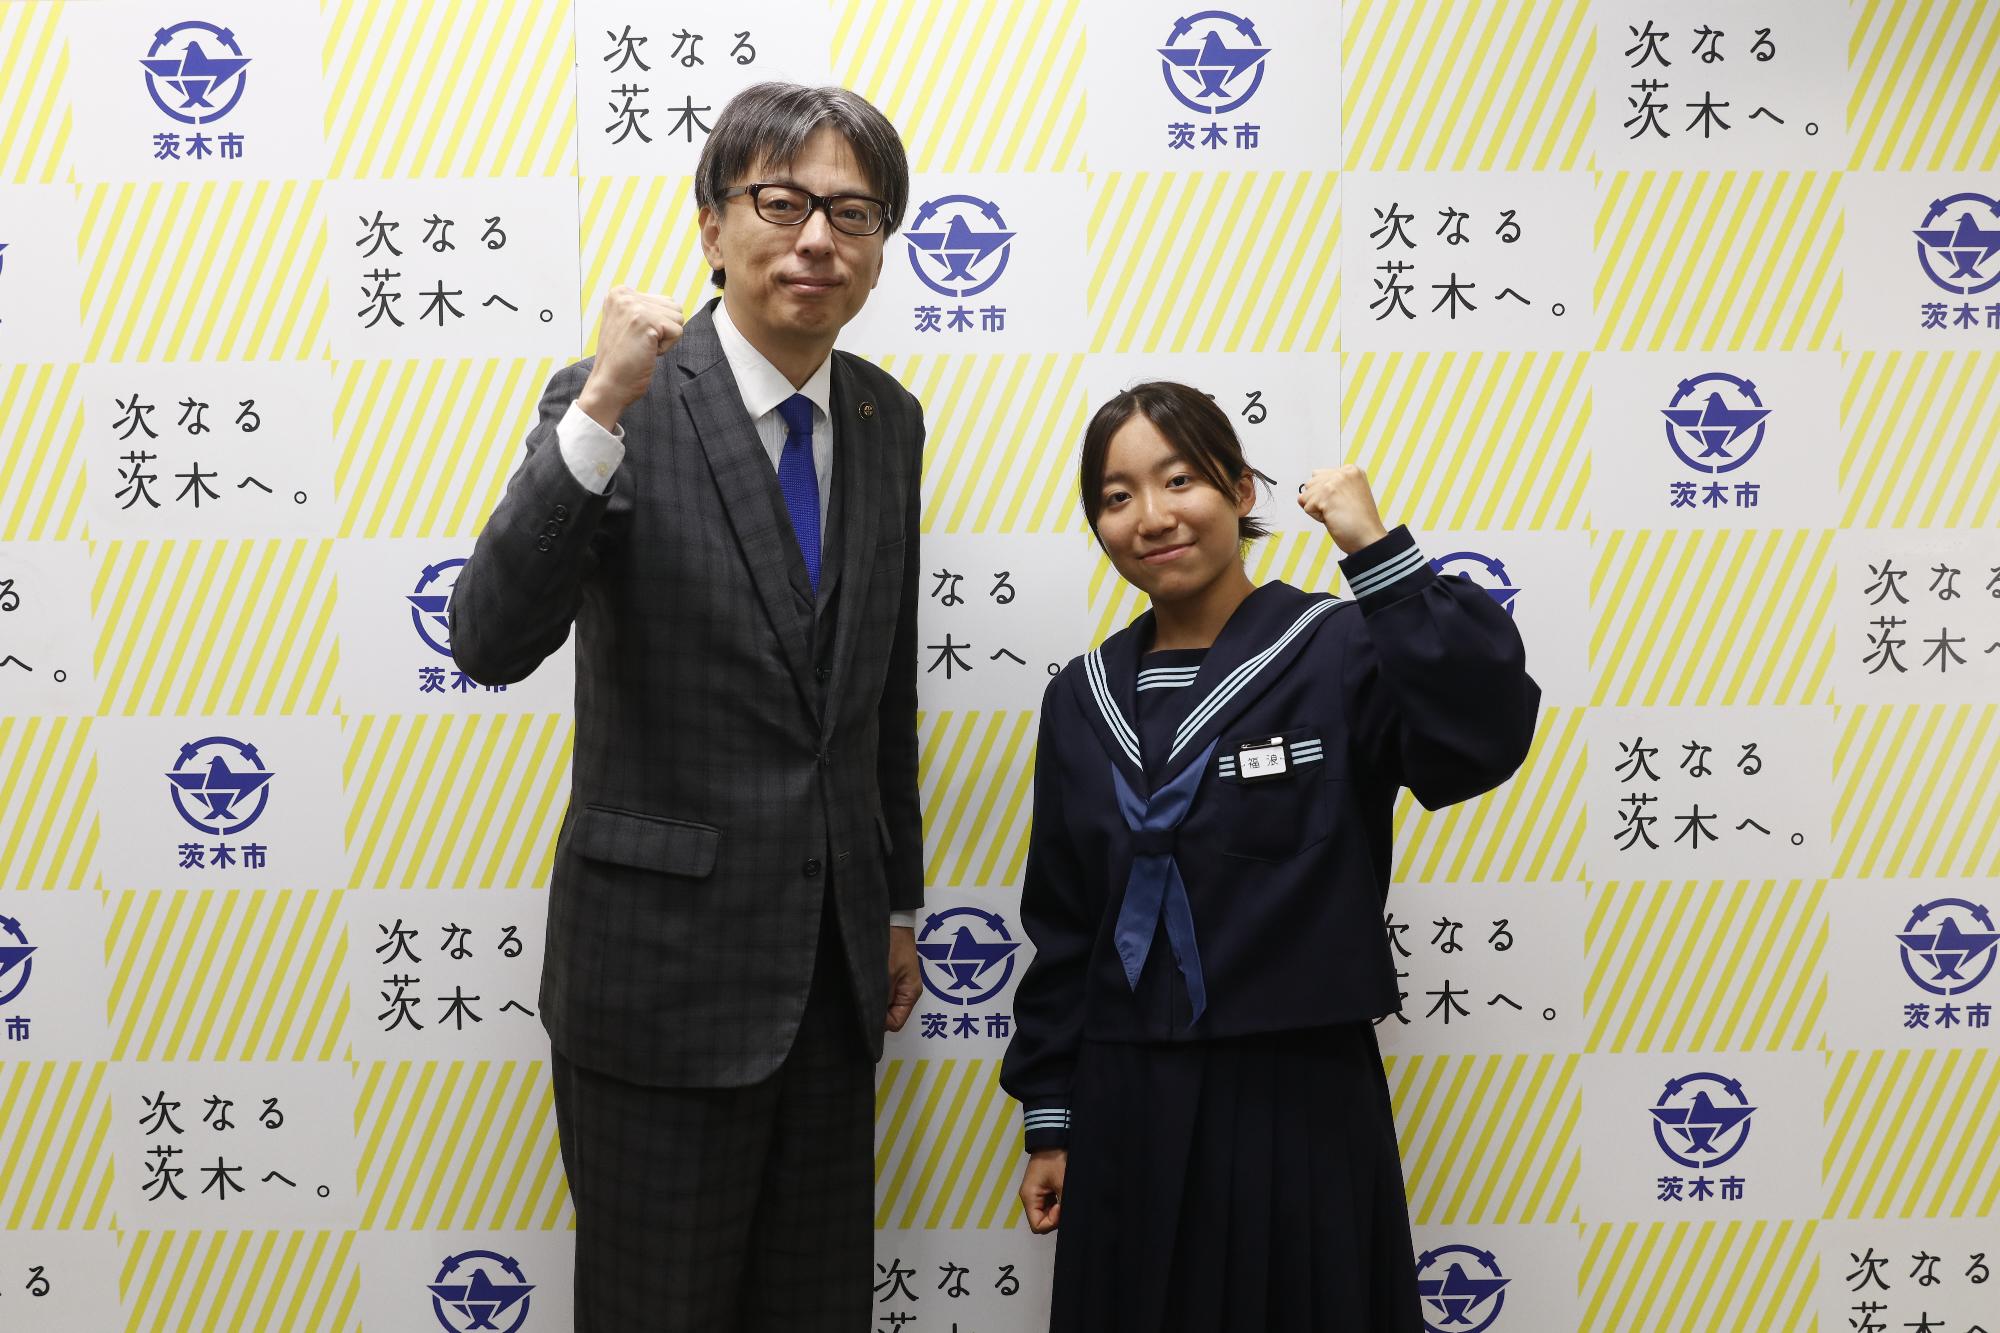 福浪彩葵さんと市長の写真